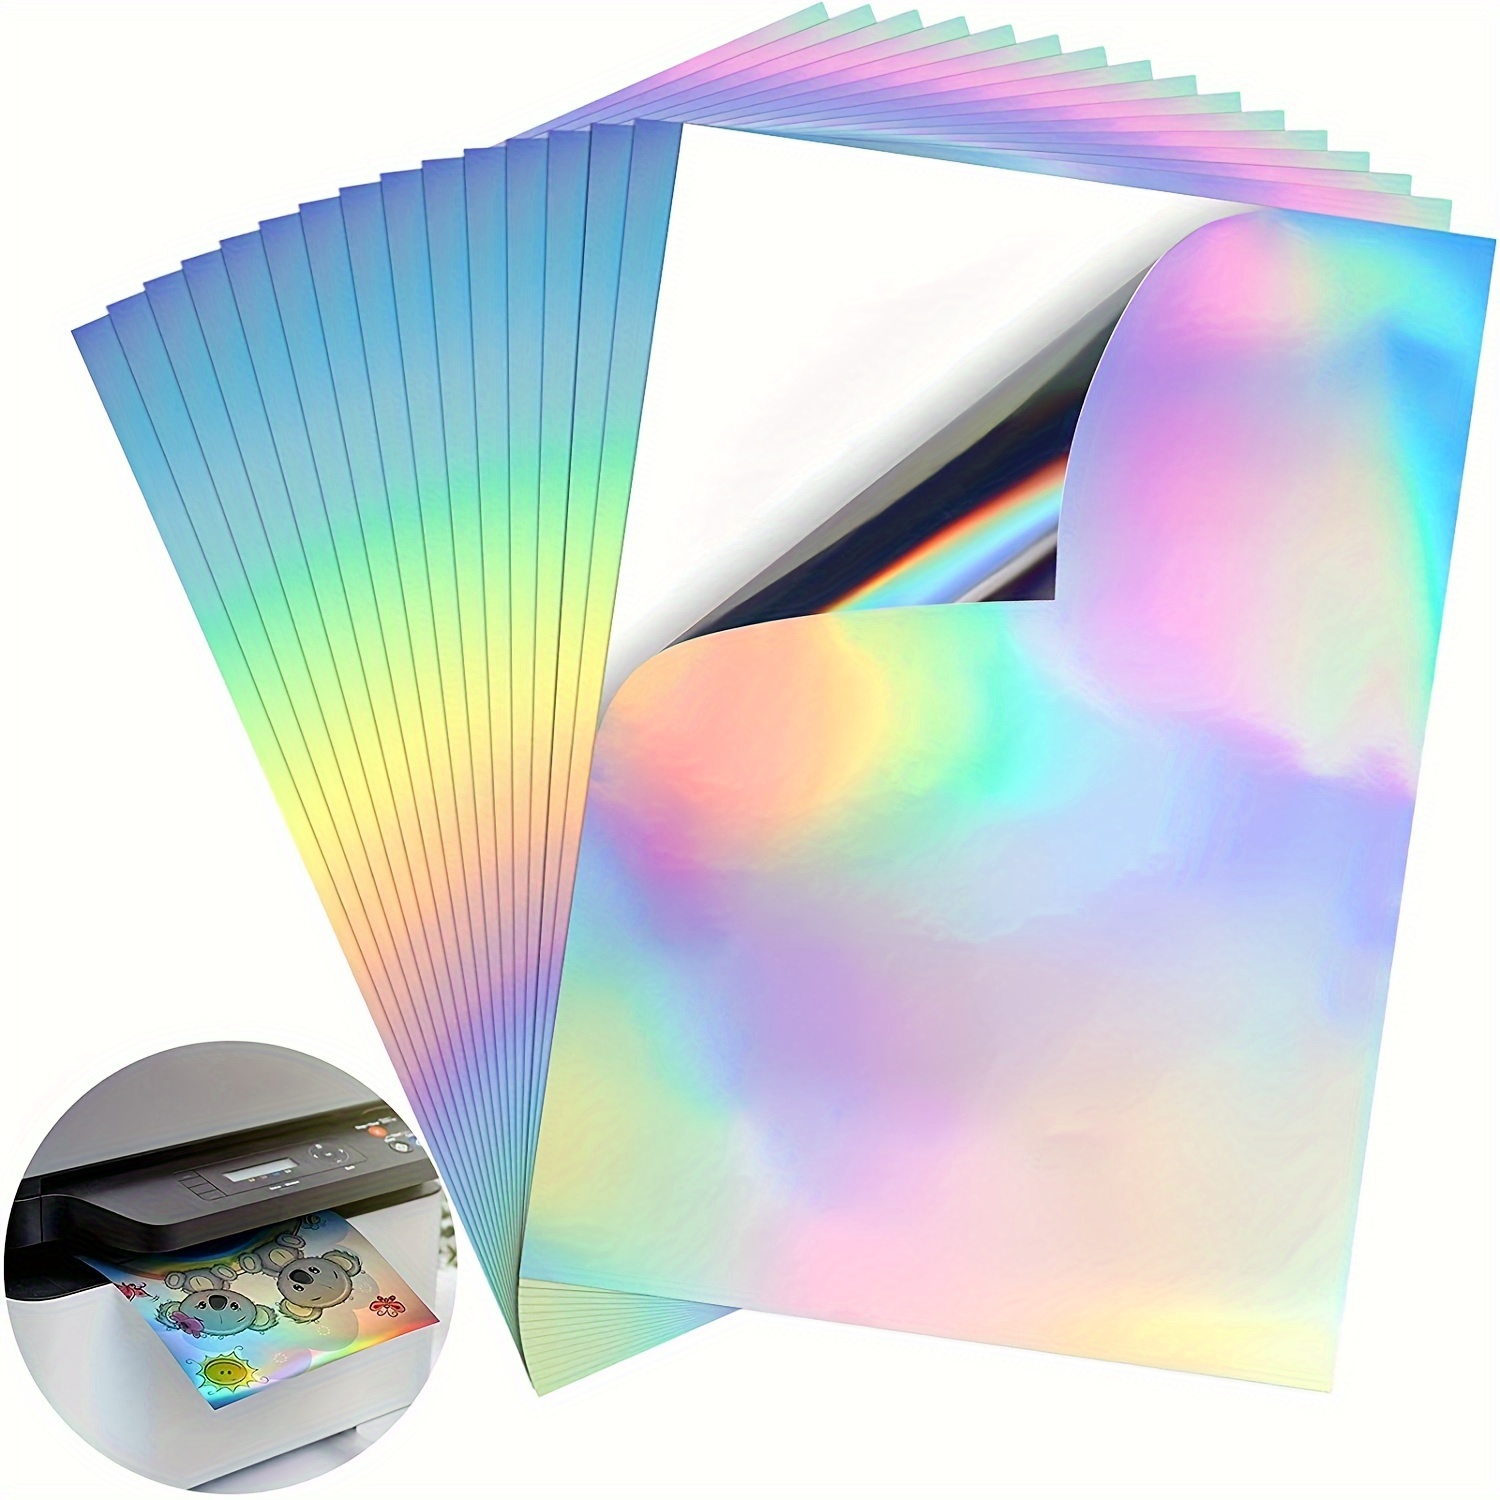  Papel adhesivo de vinilo imprimible para impresora láser, color  blanco brillante, 15 hojas autoadhesivas, papel adhesivo impermeable,  tamaño carta estándar de 8.5 x 11 pulgadas : Productos de Oficina